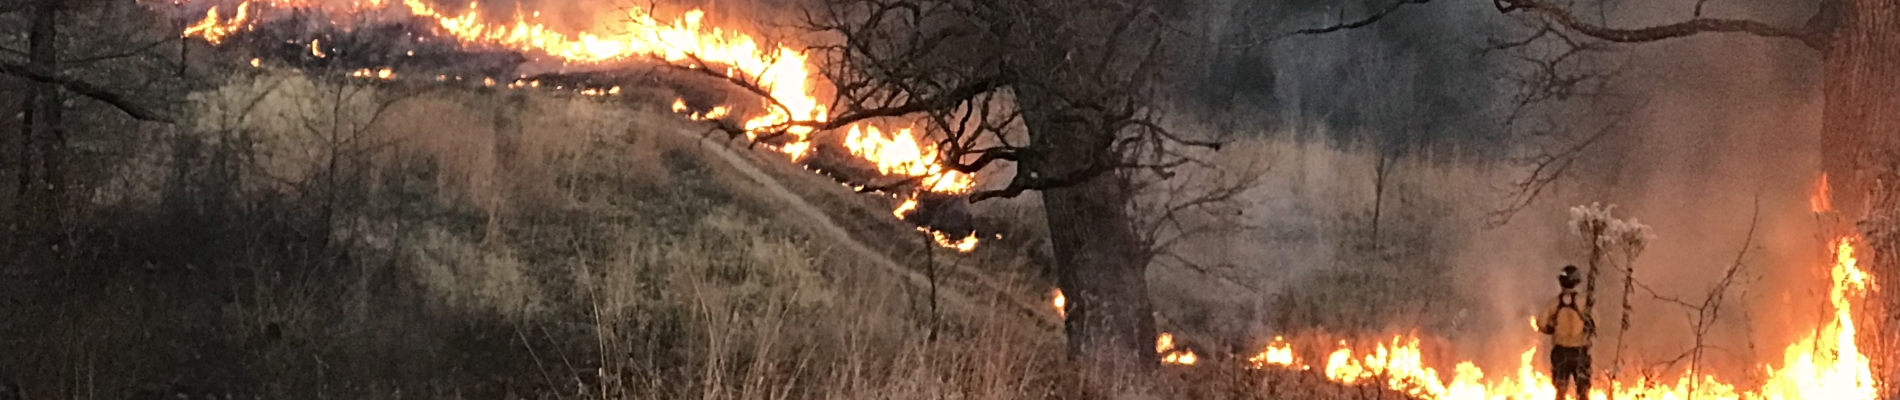 A firefighter standing next to fire on a hillside.